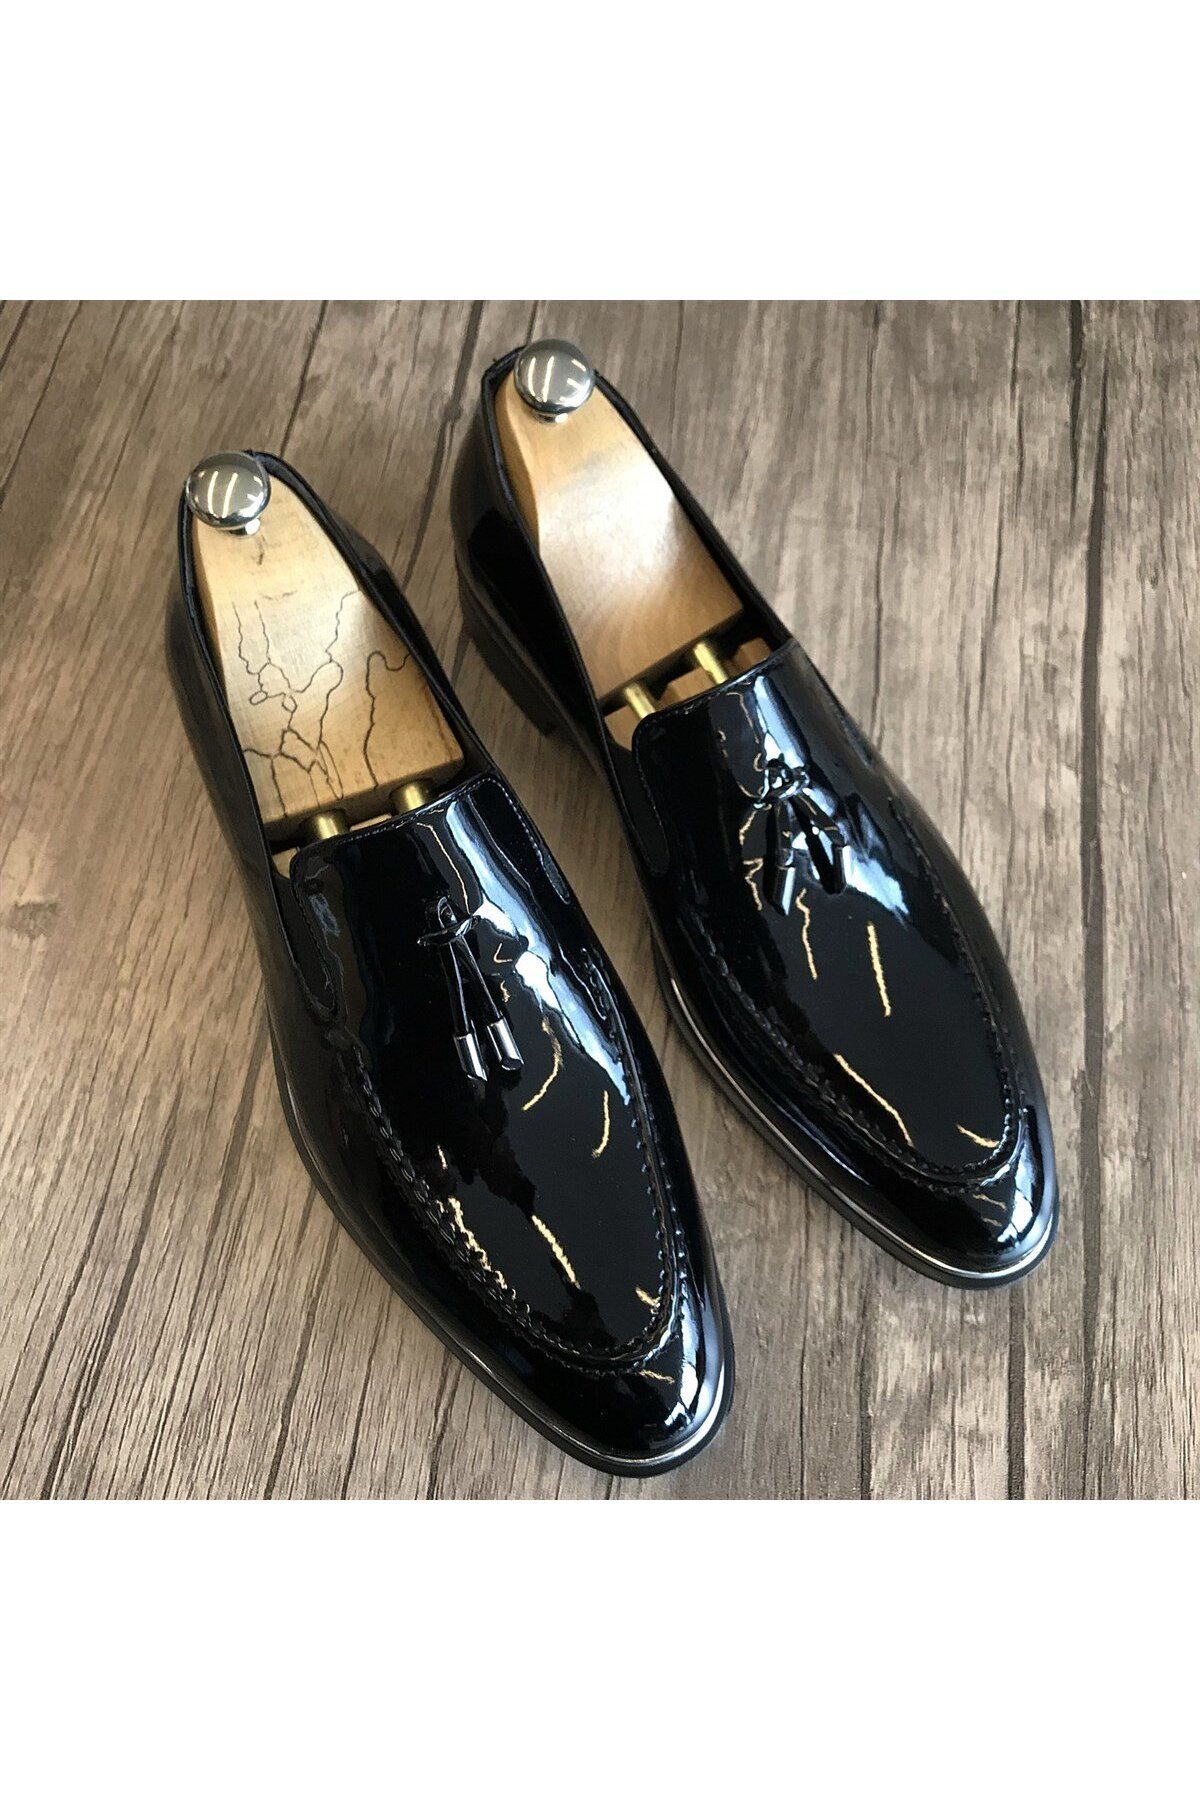 TerziAdemAltun İtalyan Stil Damatlık Erkek Rugan Ayakkabı Siyah T4818